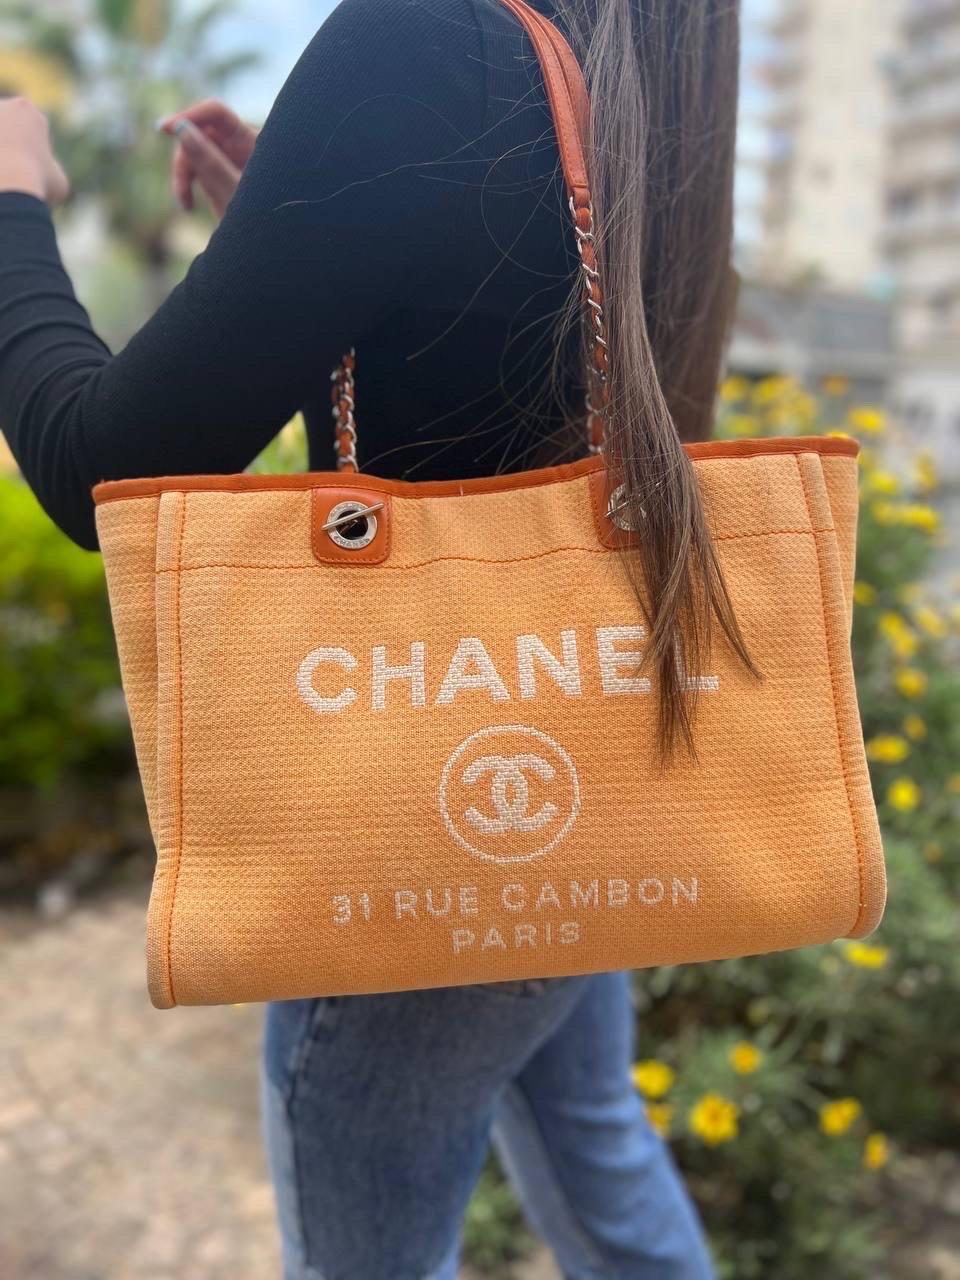 Chanel-Firmentasche, Modell Deauville, gefertigt in orangefarbenem Leder, mit Einsätzen in Pelle und silberfarbener Hardware. Ausgestattet mit einem Zentralverschluss mit kaltem Boden, der innen mit hochwertigem, sehr strapazierfähigem Material